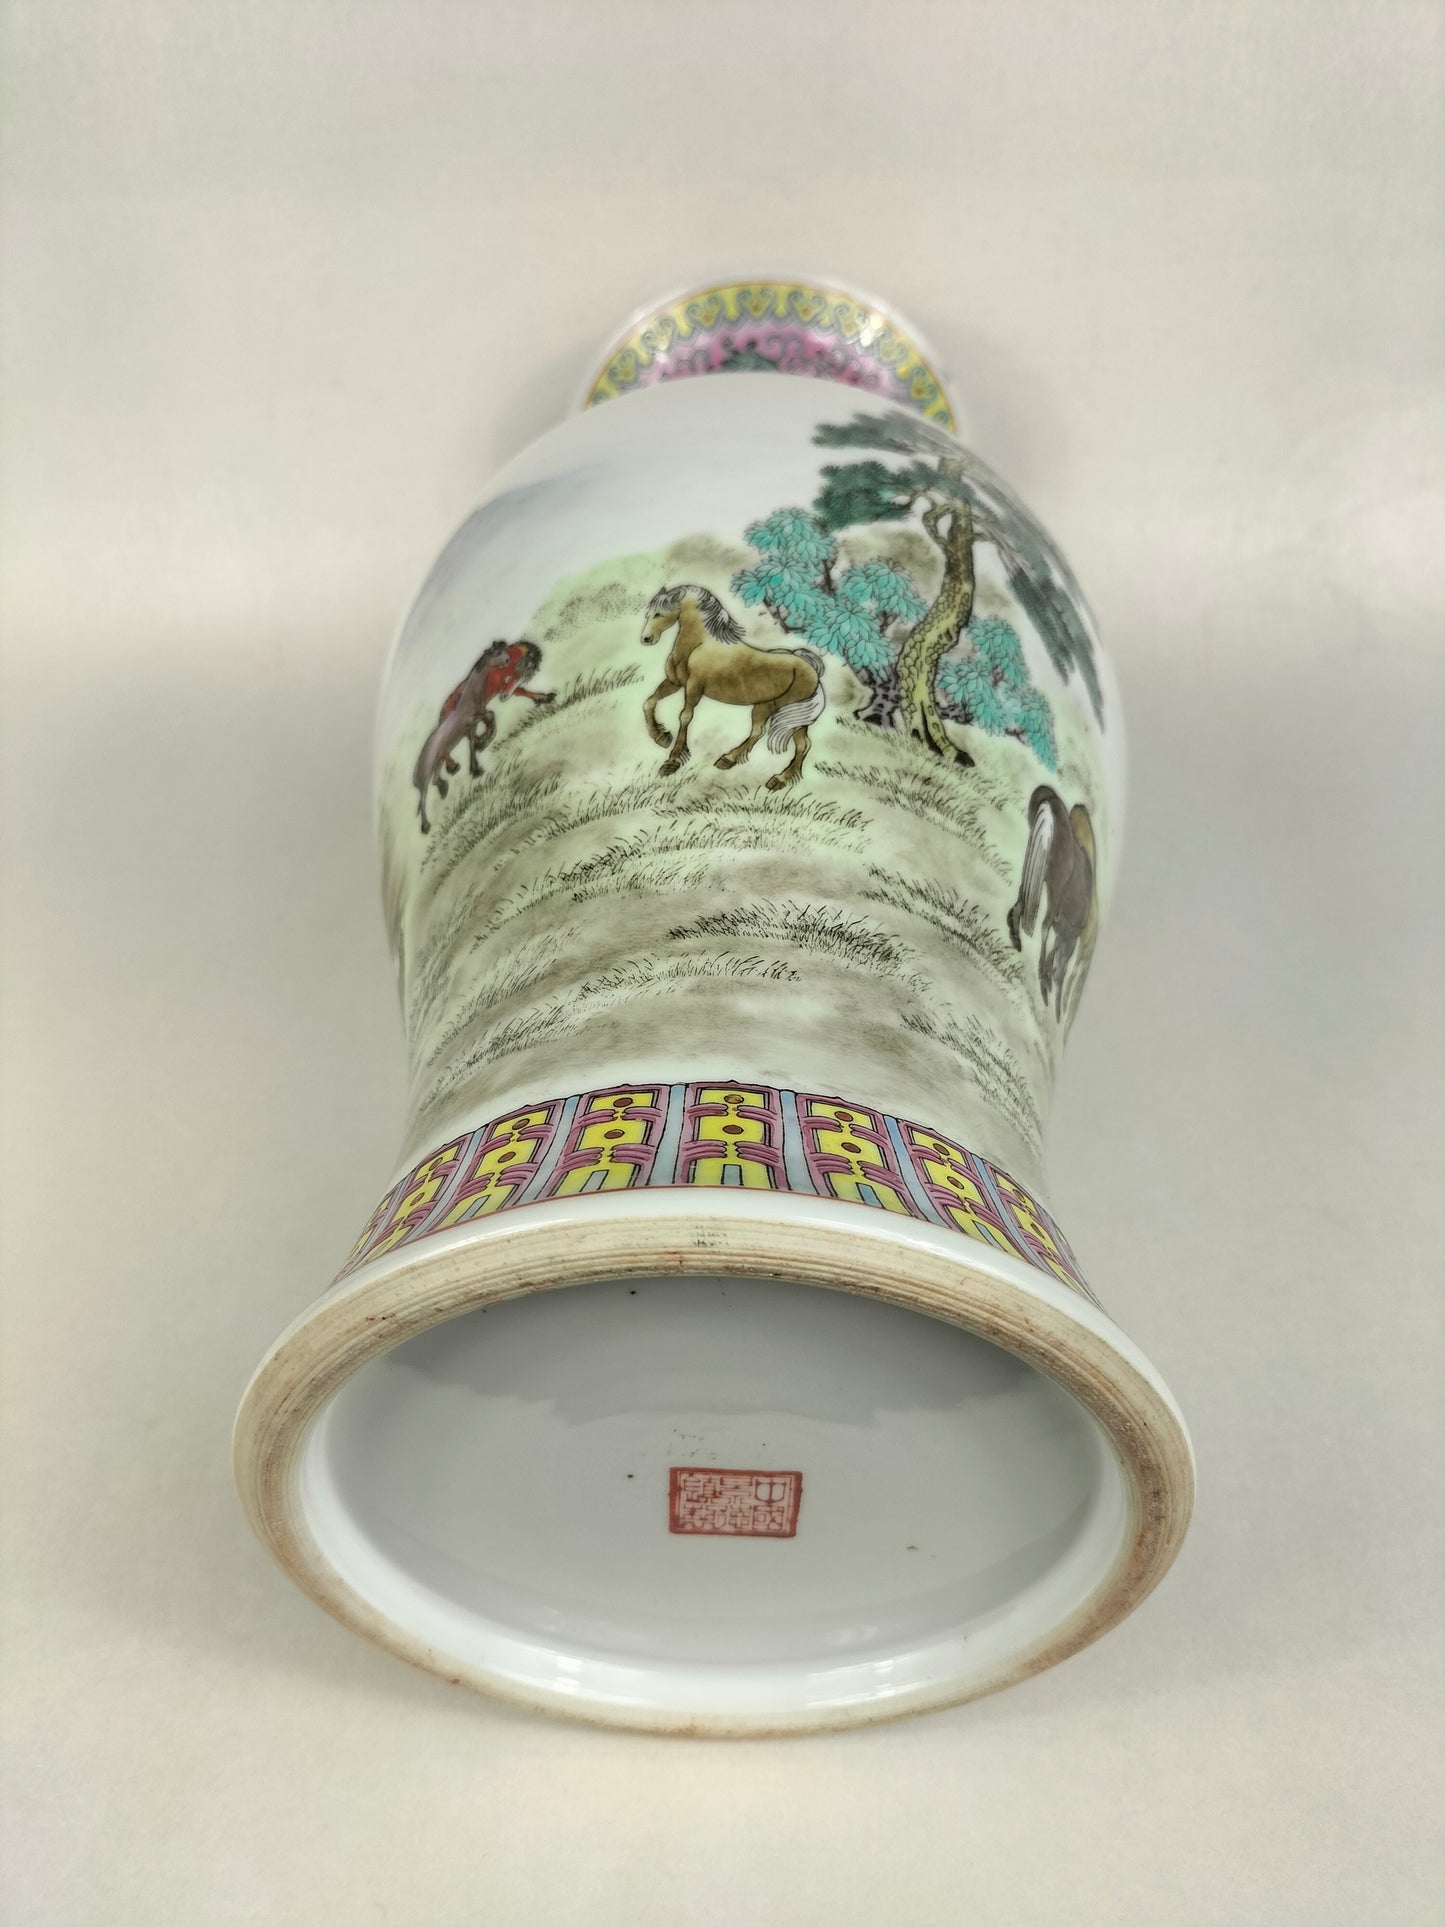 中国粉彩马花瓶 // 景德镇 - 20 世纪